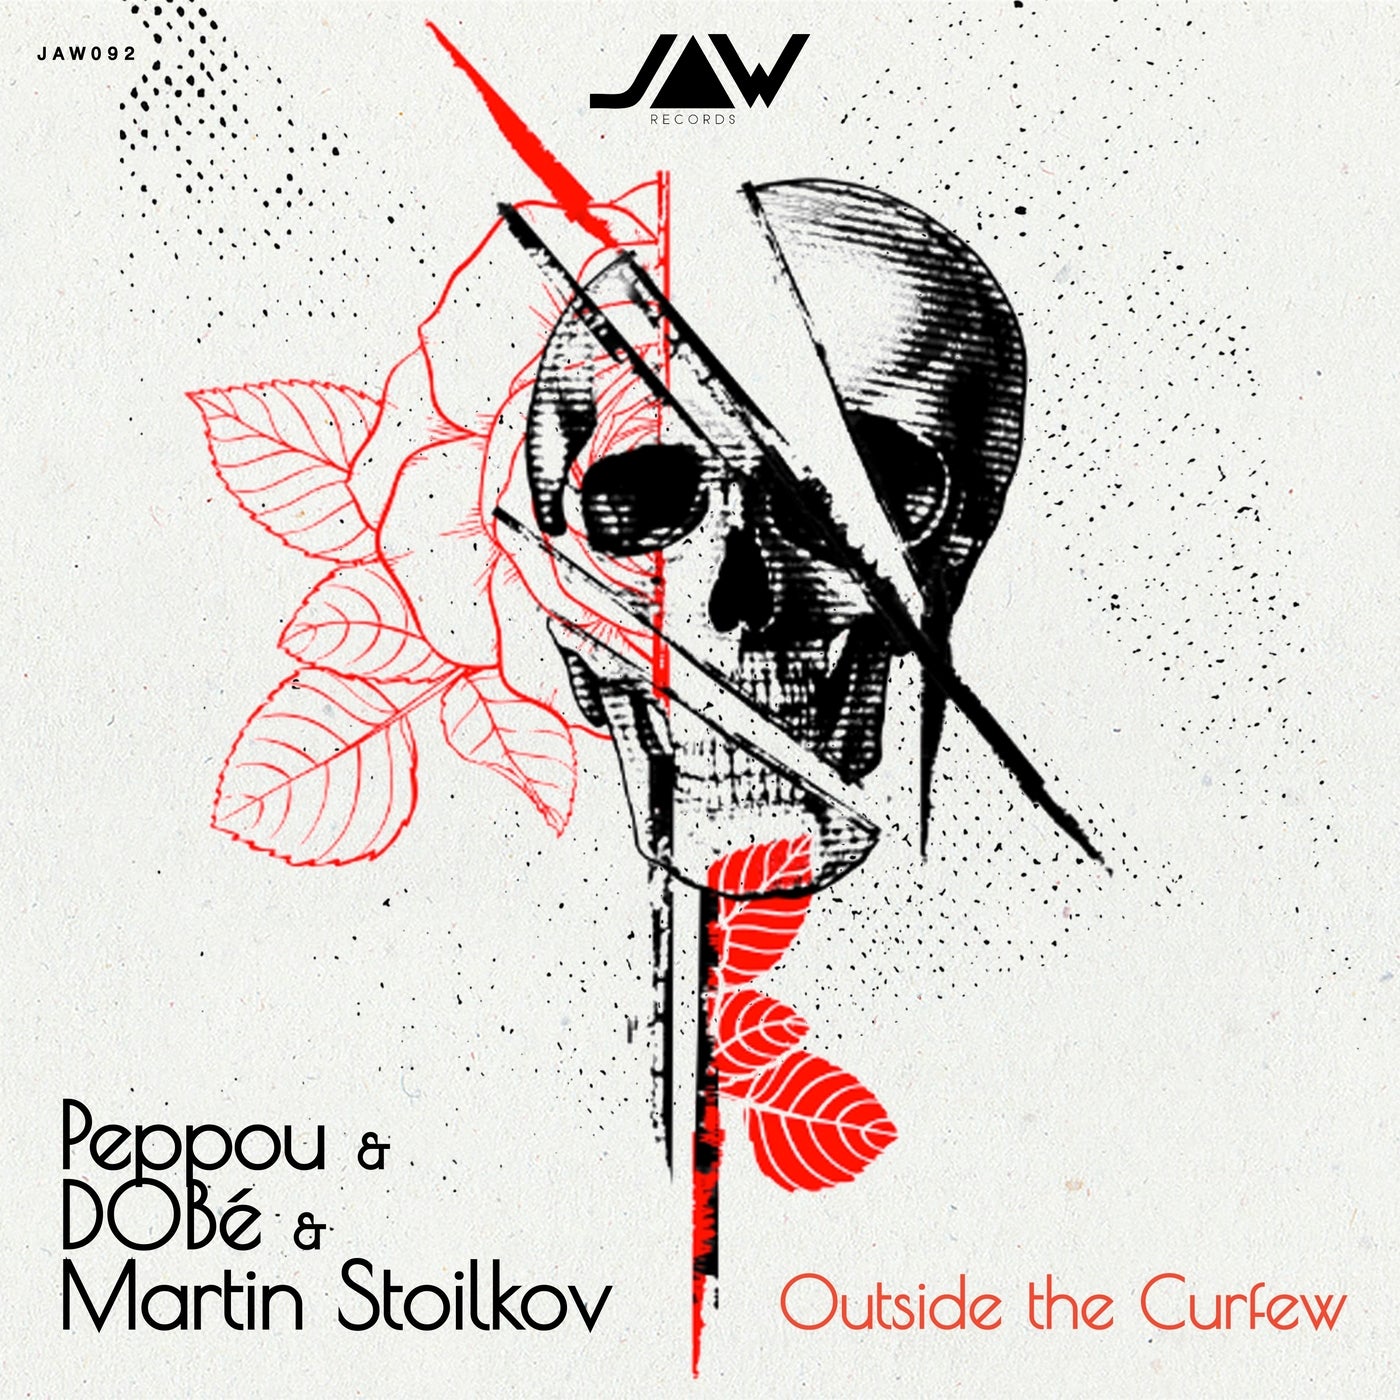 Download Peppou, Martin Stoilkov, DOBé - Outside the Curfew on Electrobuzz